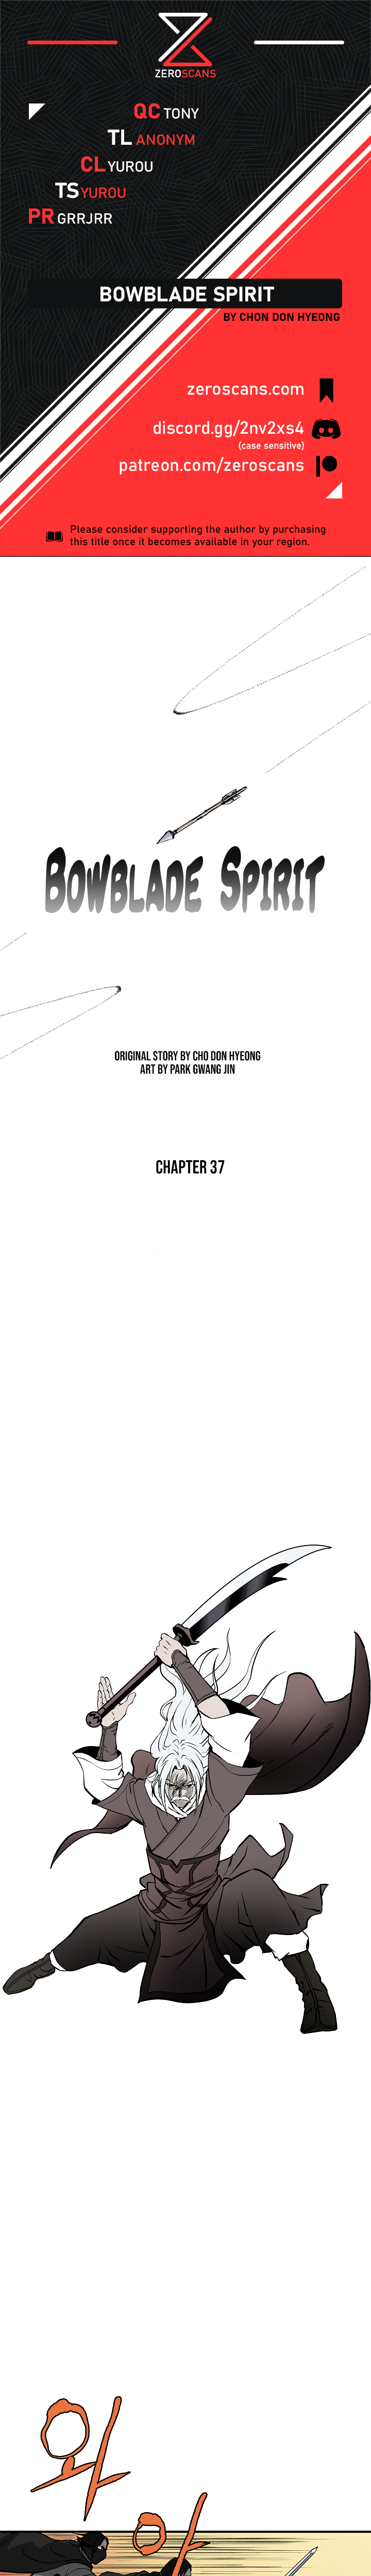 Bowblade Spirit - Chapter 3725 - Image 1